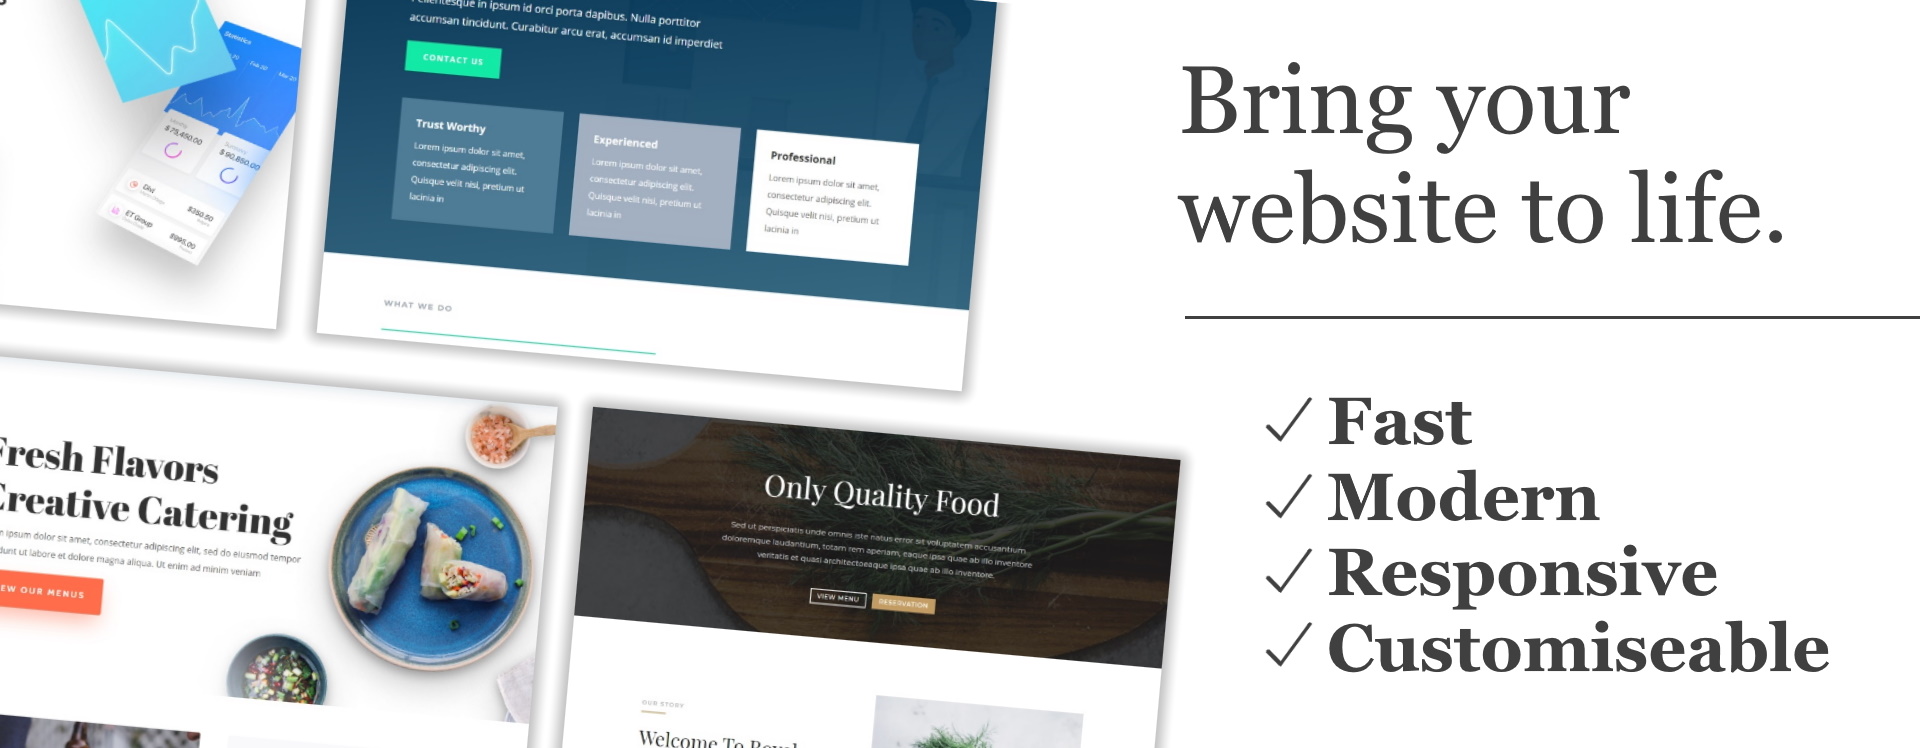 Template-based website design